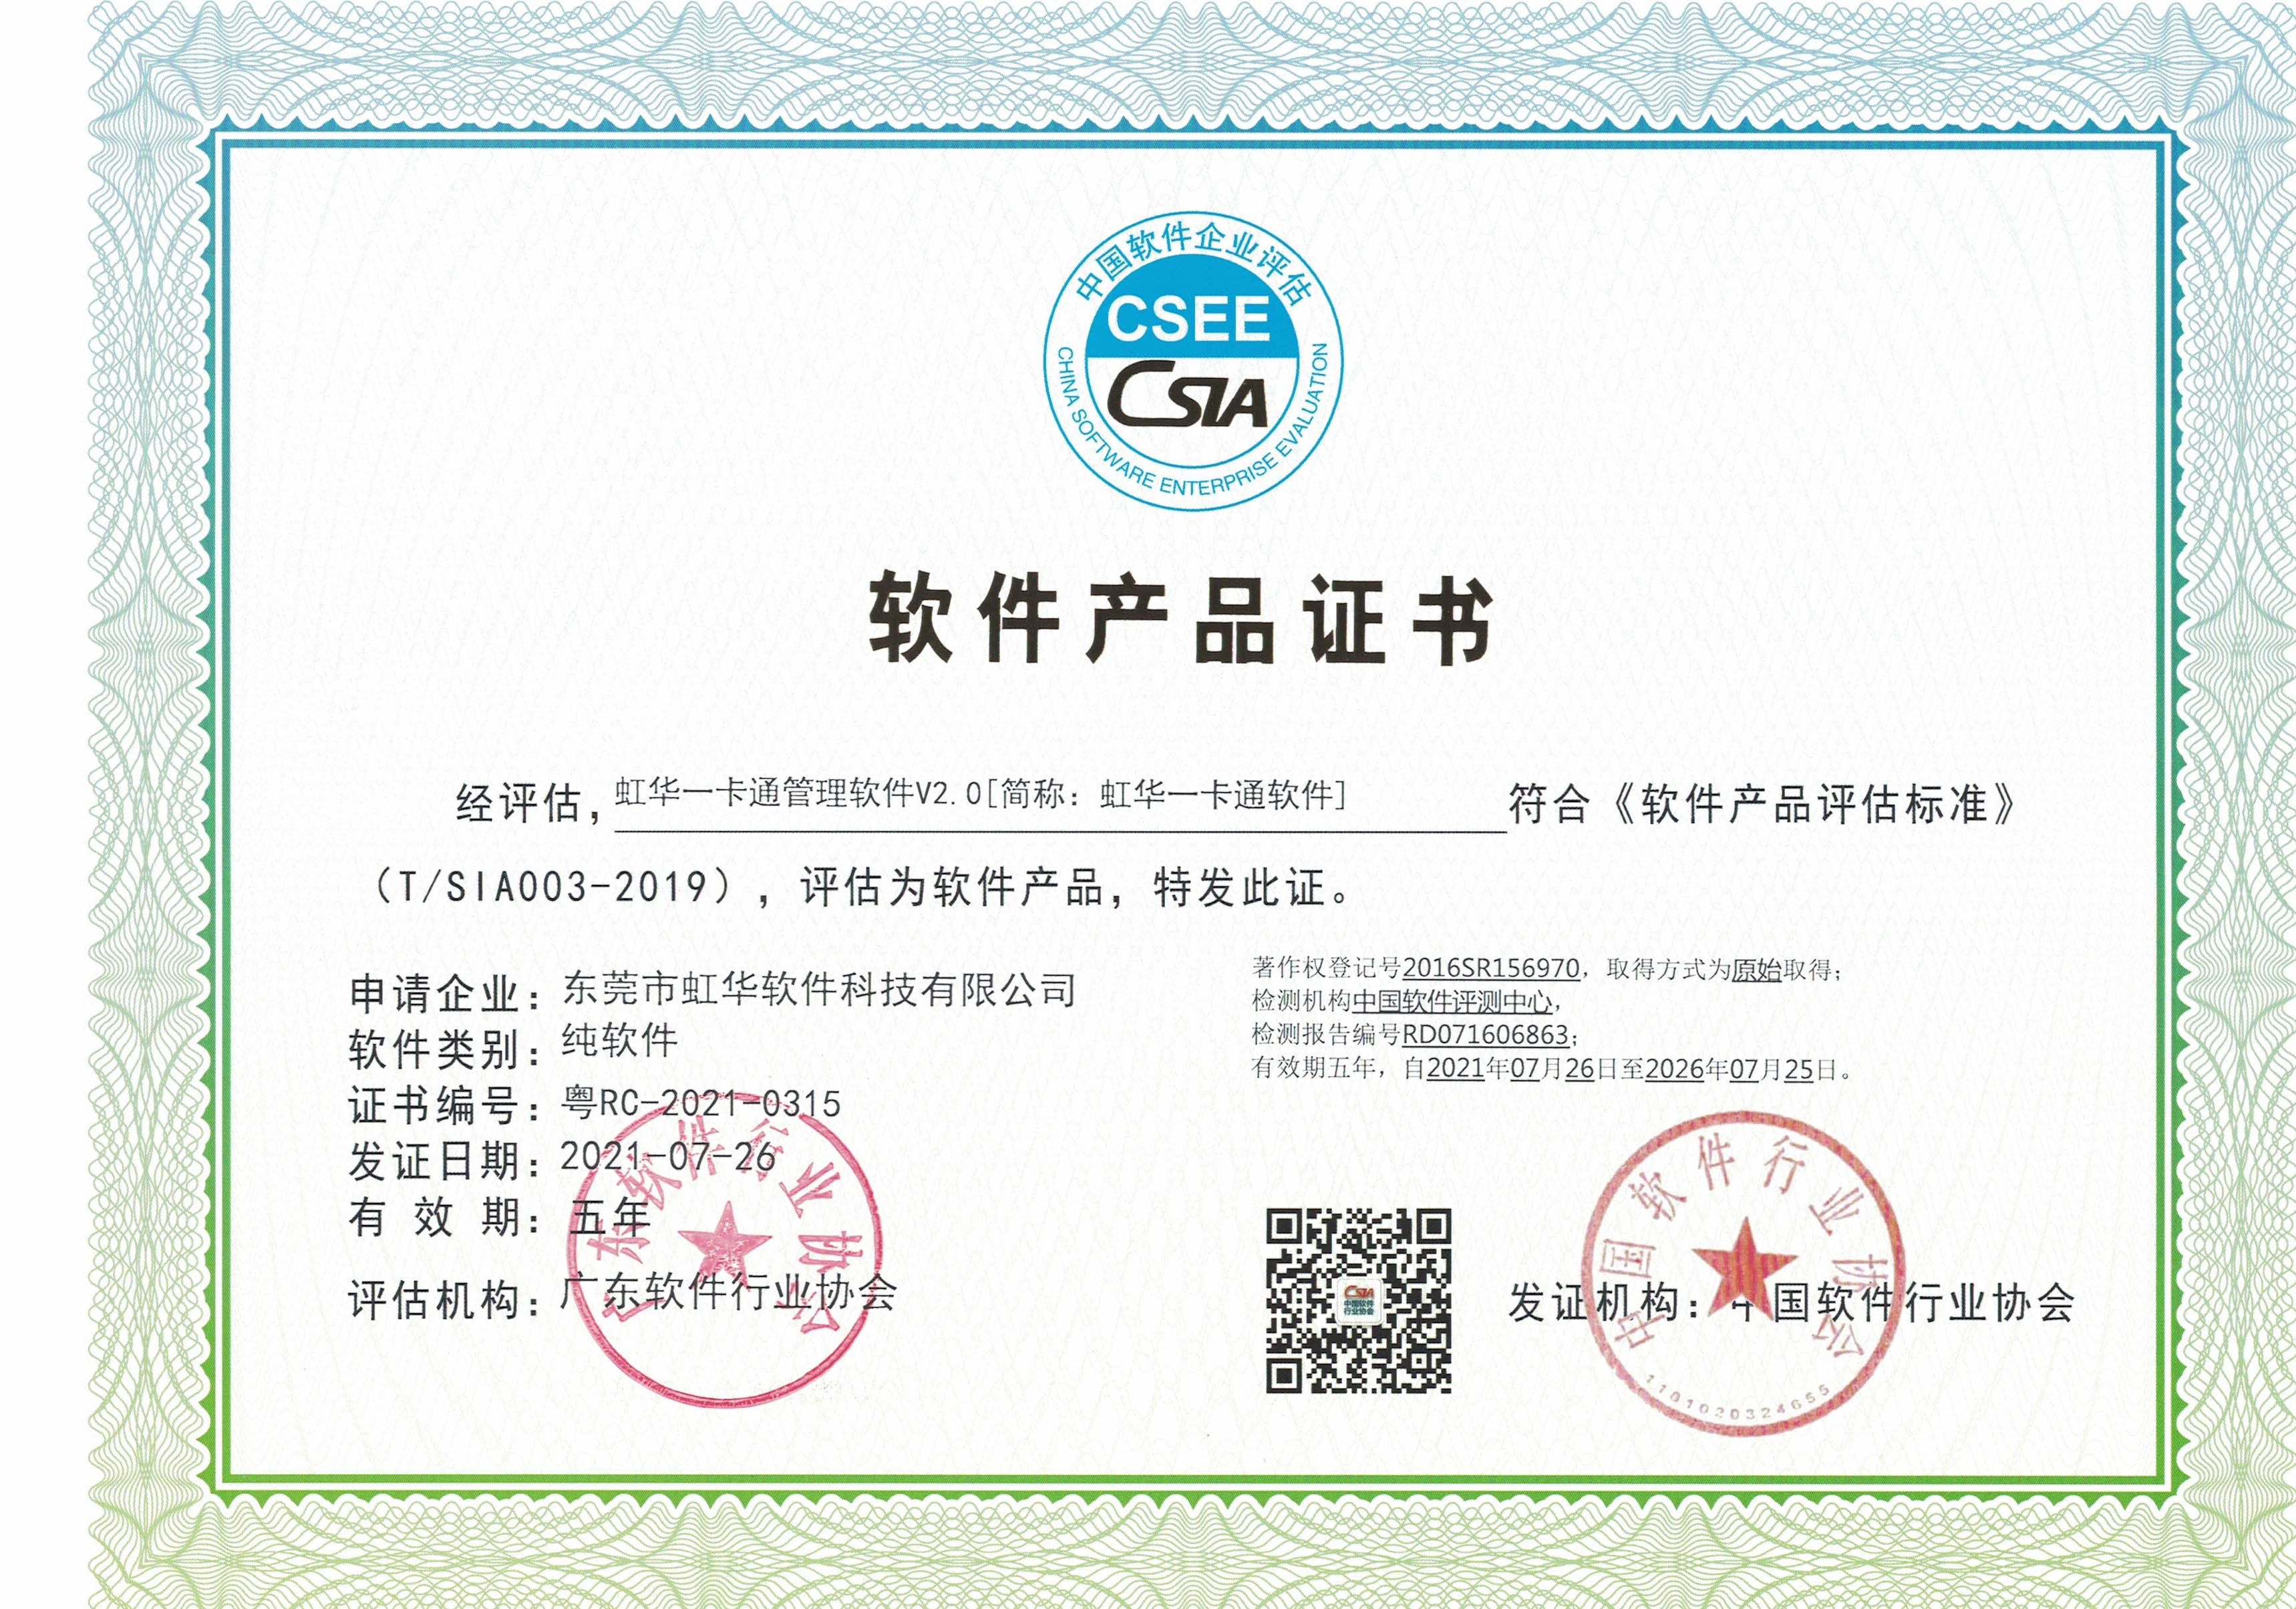 中國軟件企業評估聯盟軟件產品證書